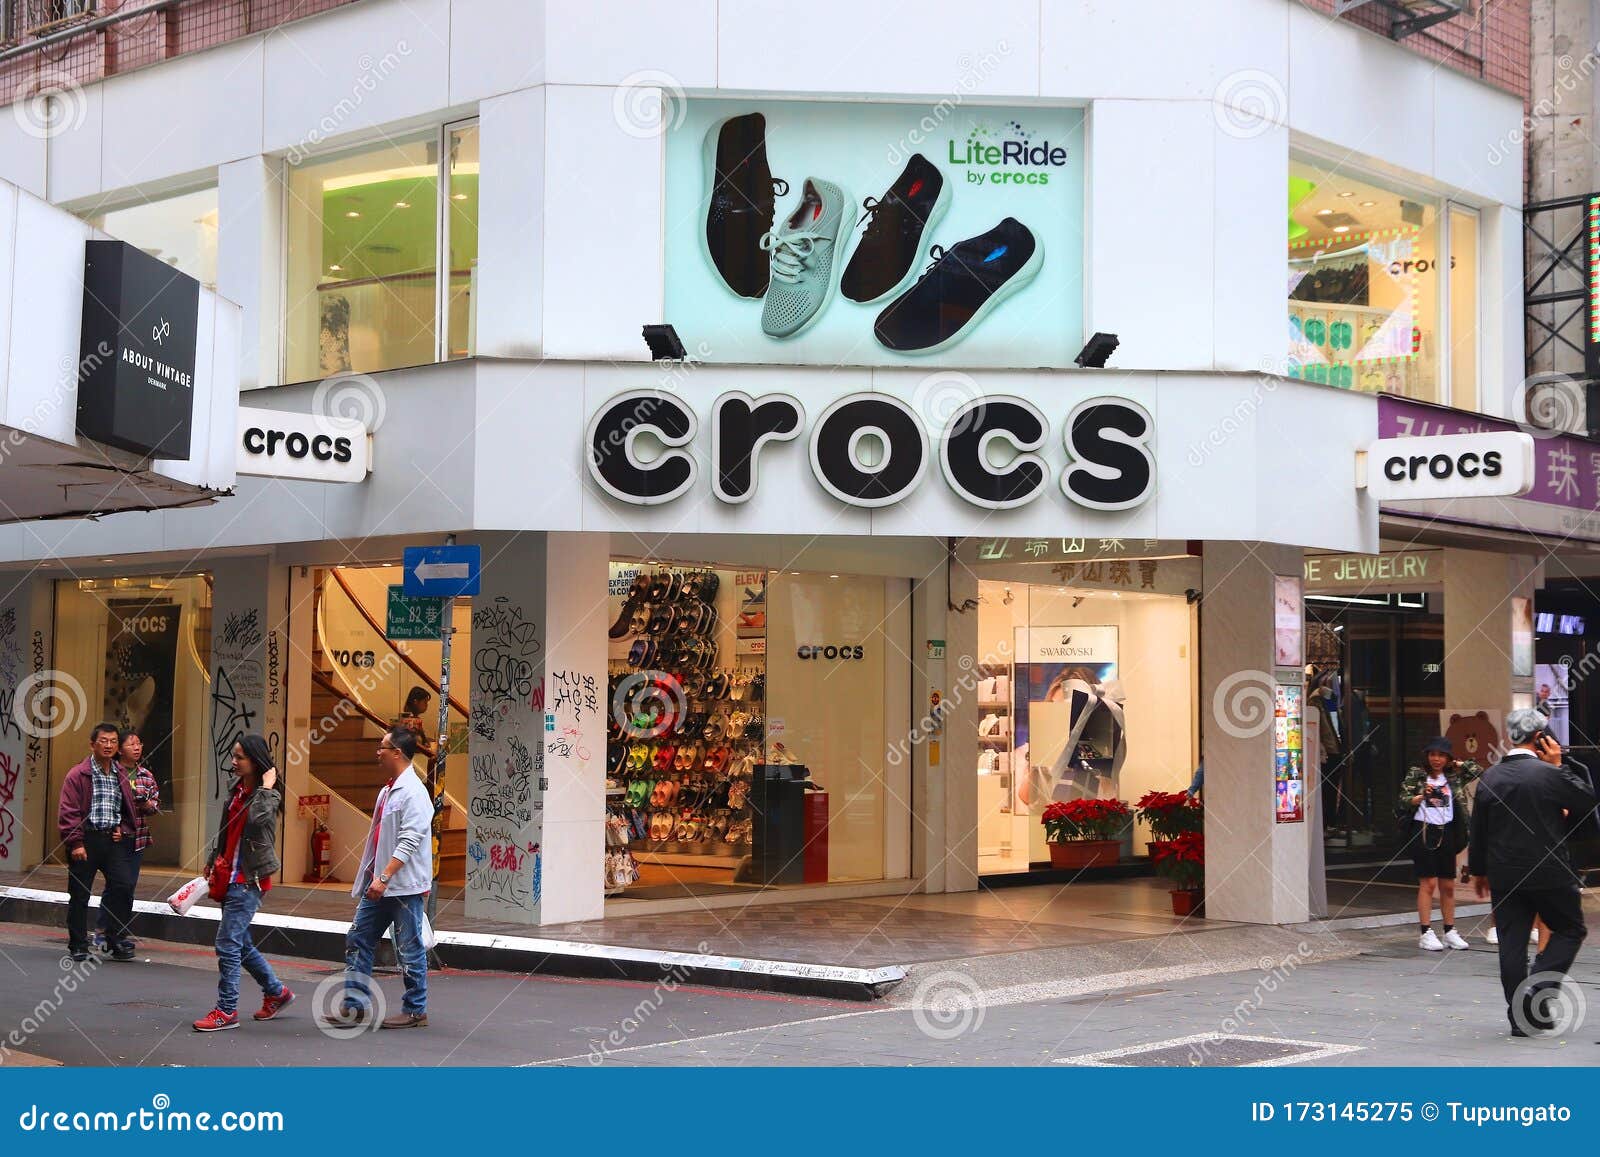 crocs footwear shops near me